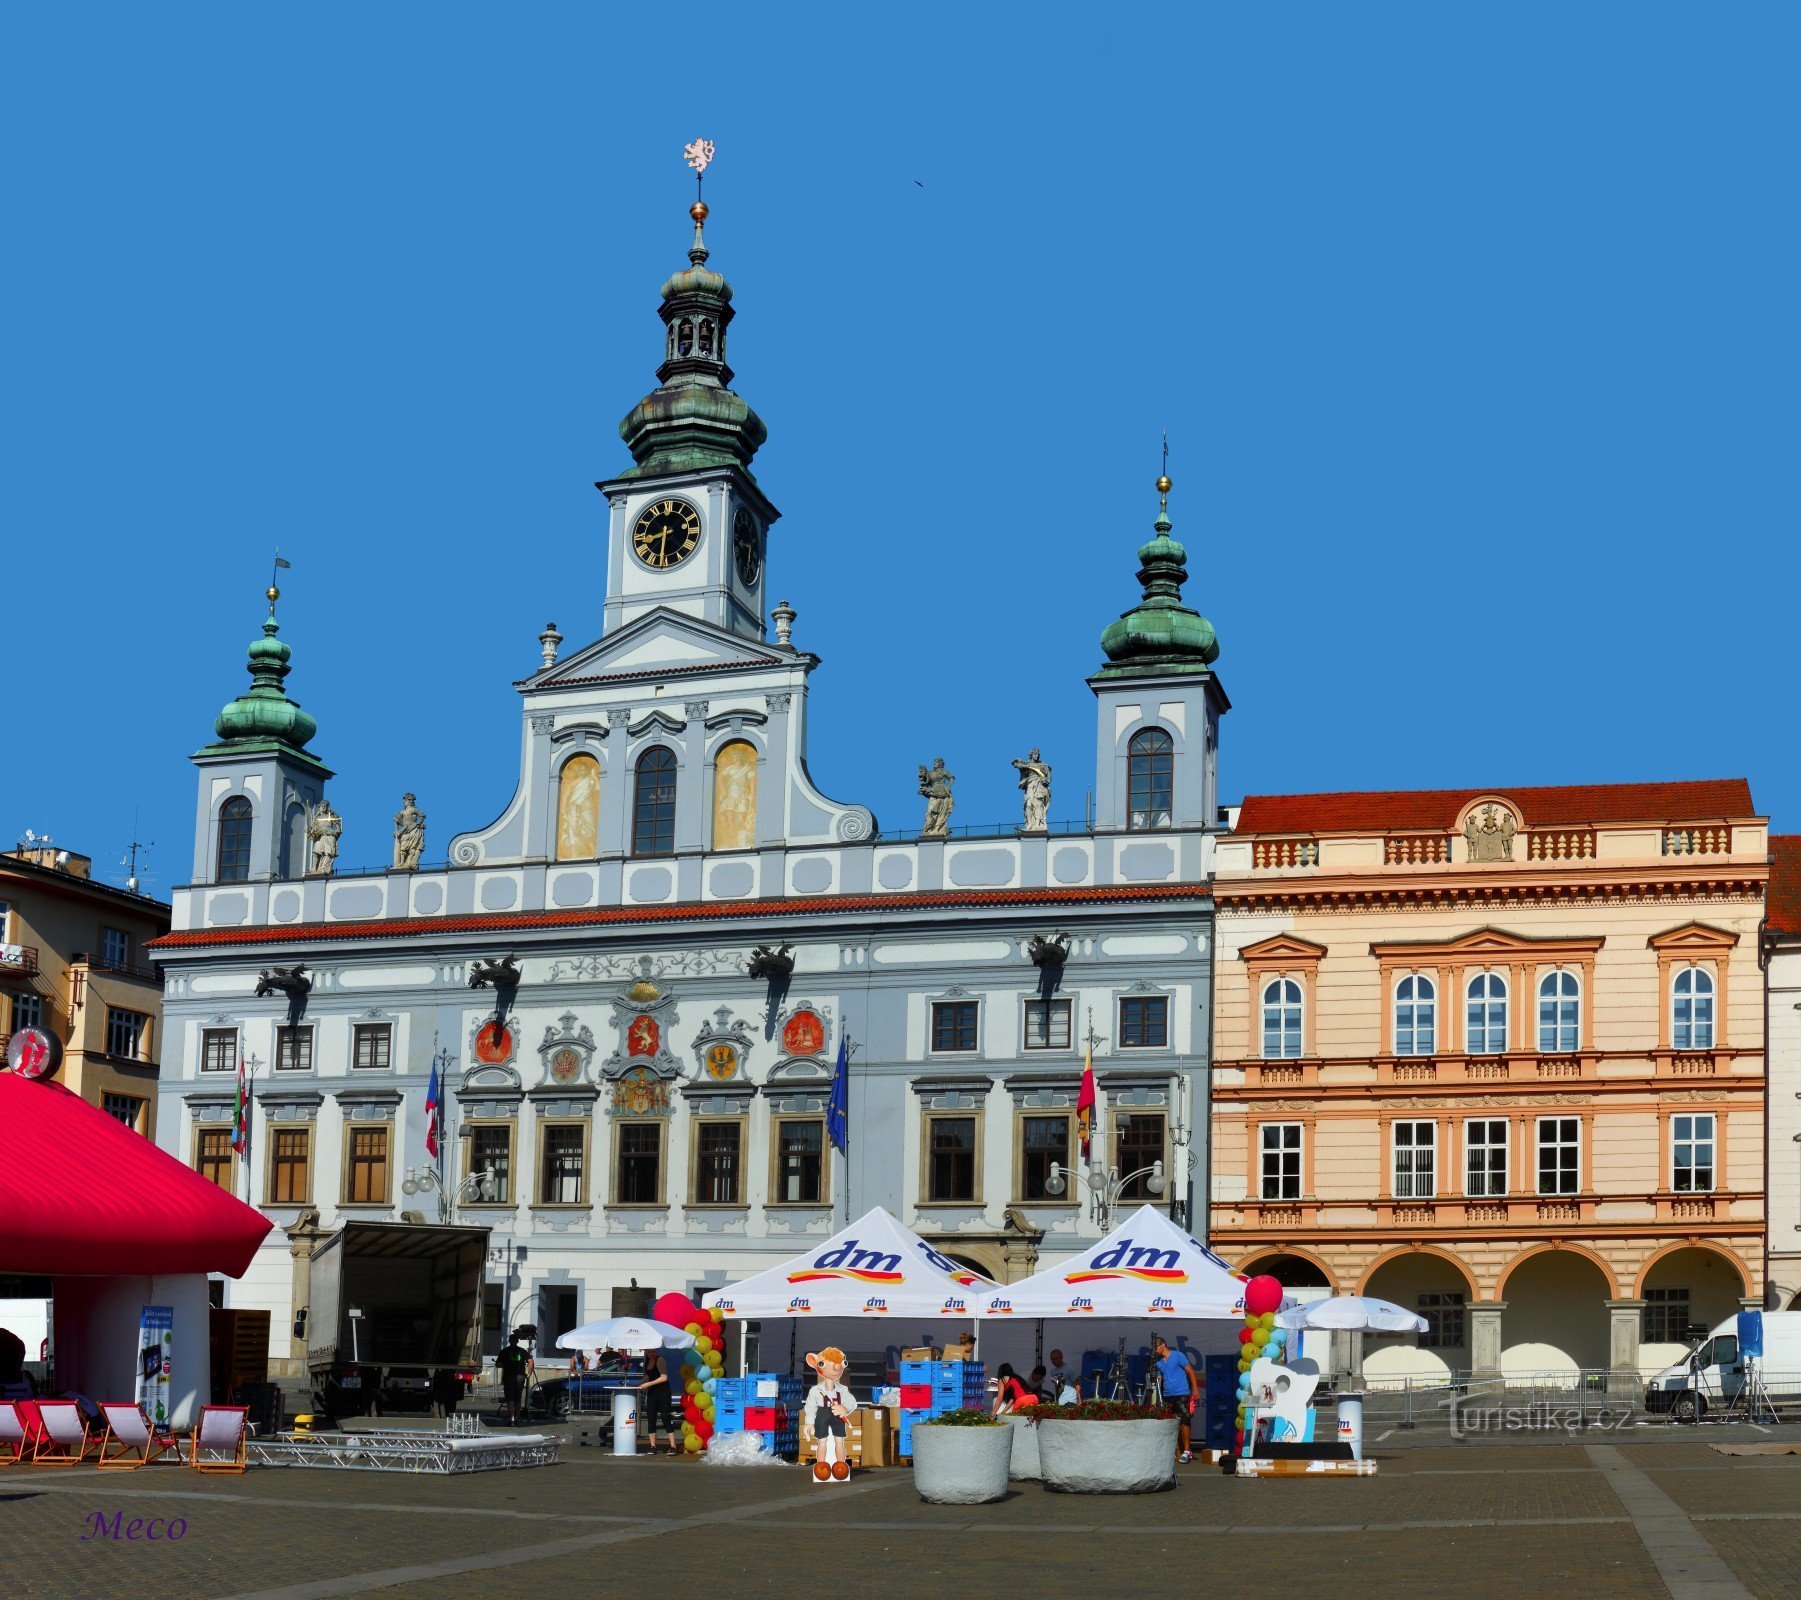 750 let mesta České Budějovice